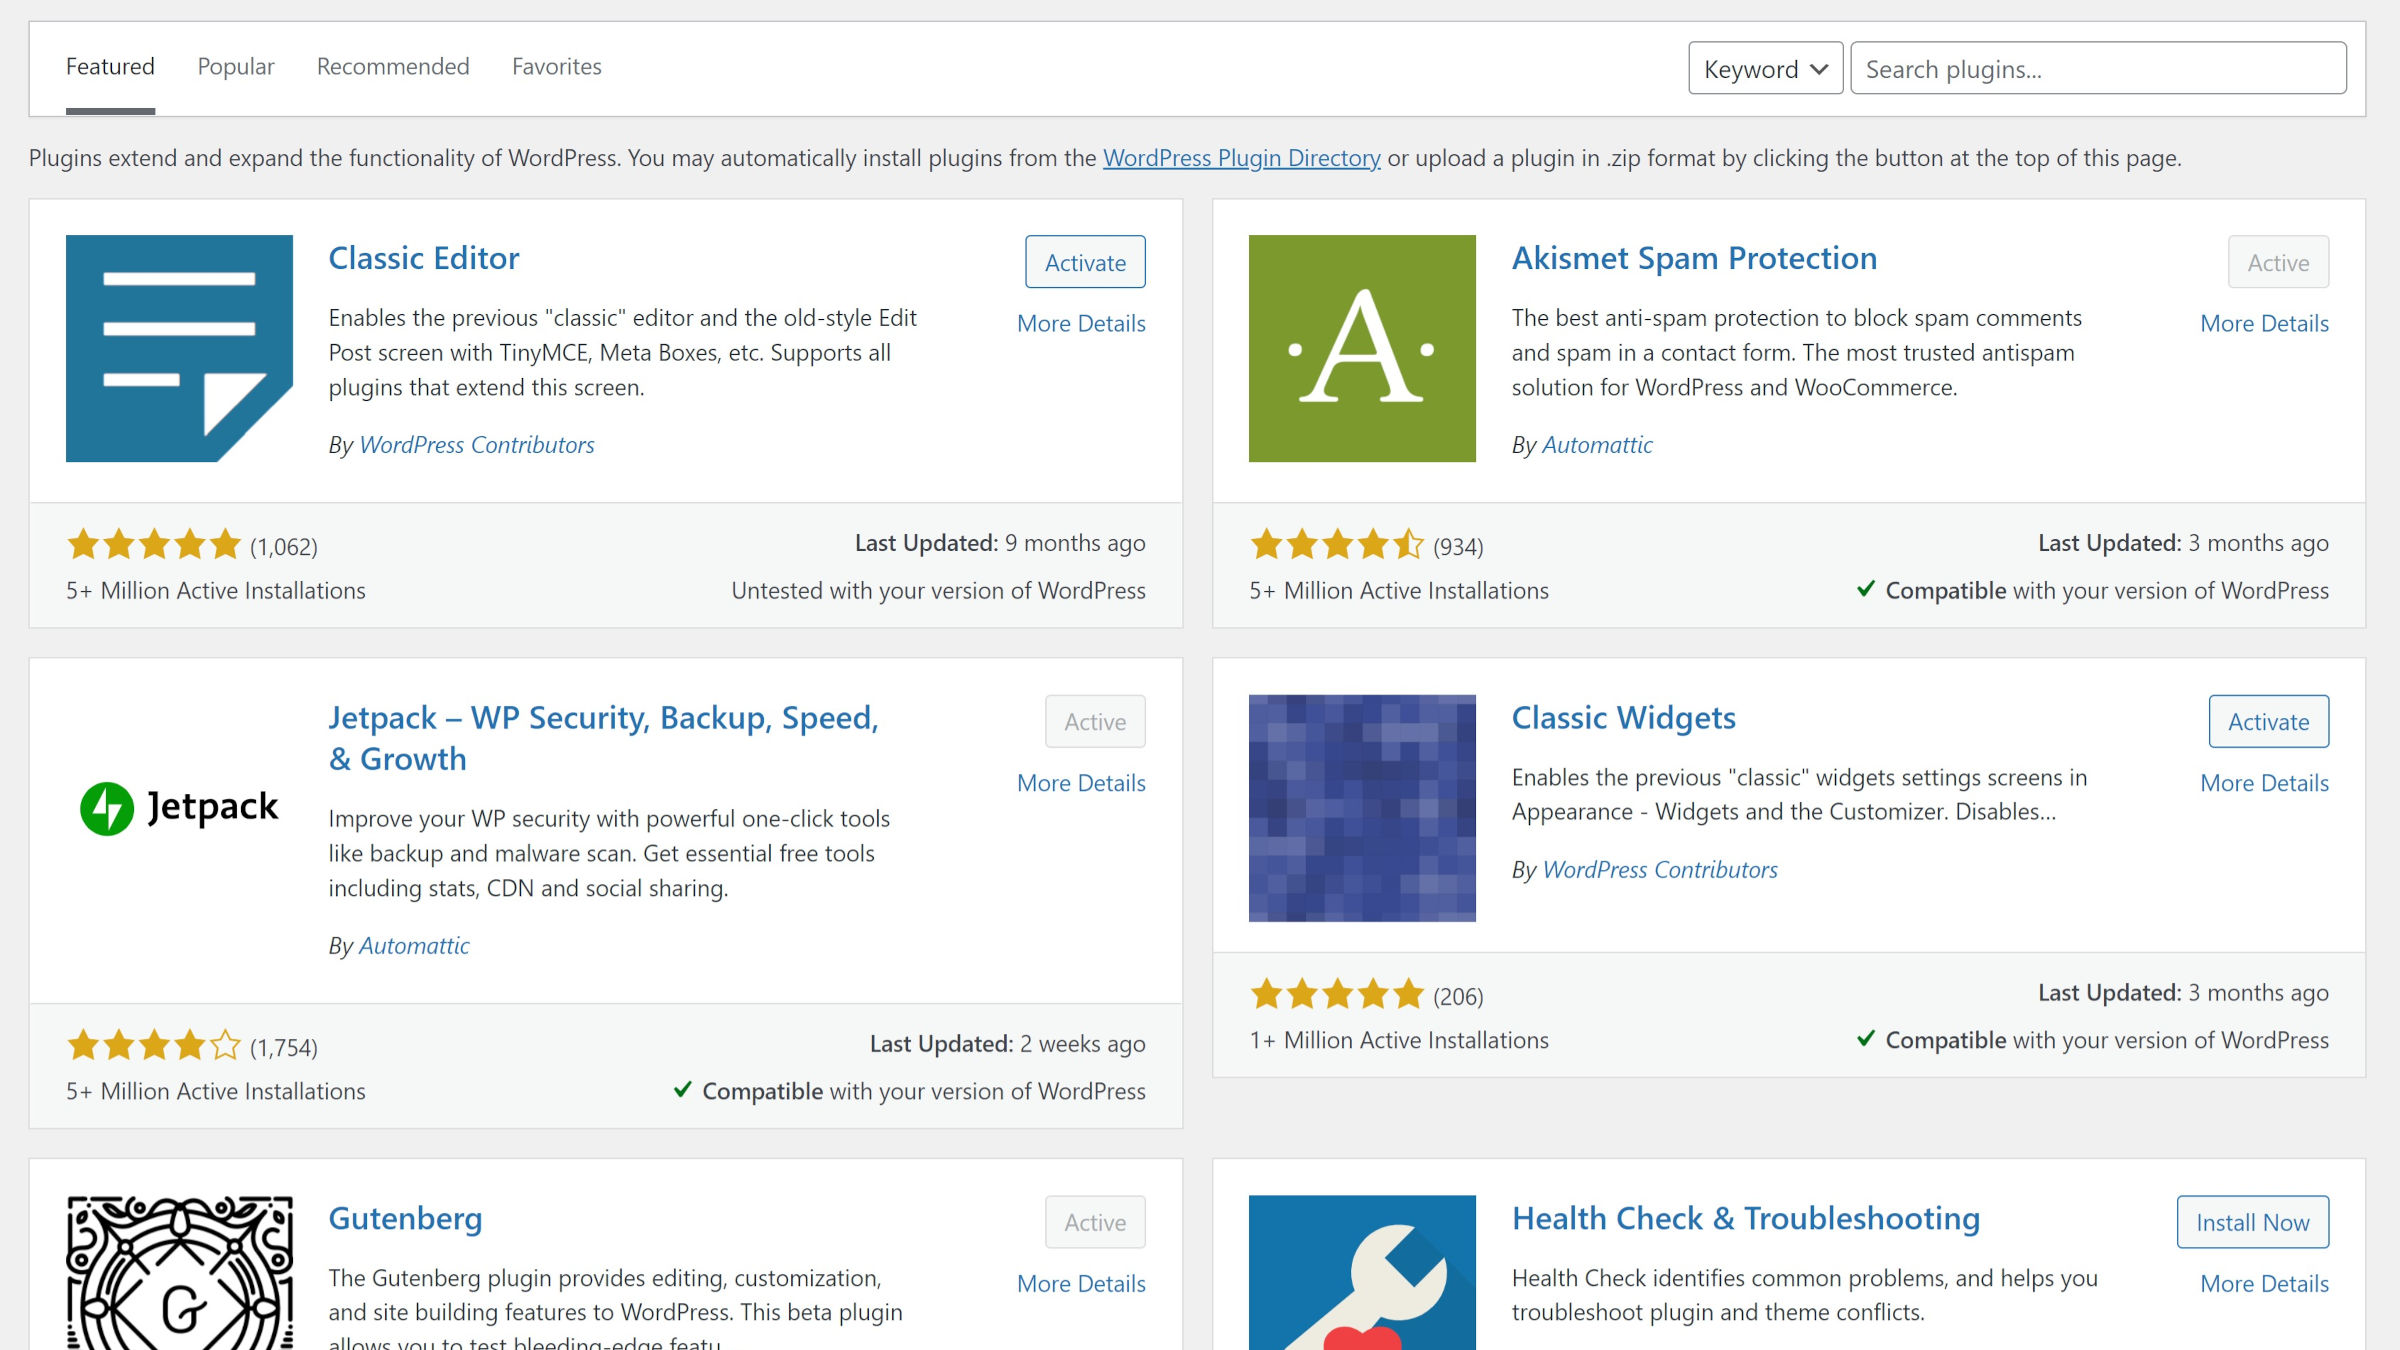 WordPress Add-New Plugin Bildschirm im Admin.  Der Screenshot zeigt 6 der 15 vorgestellten Plugins.